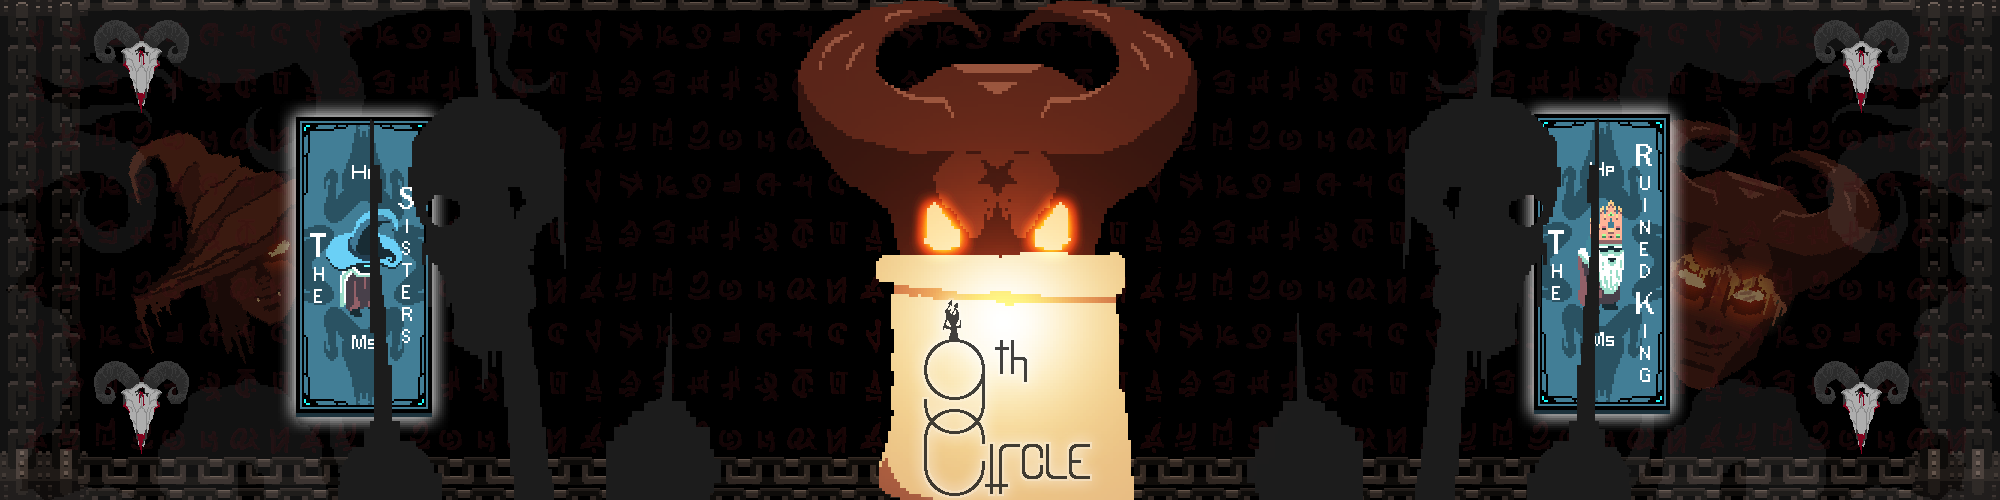 The 9th Circle